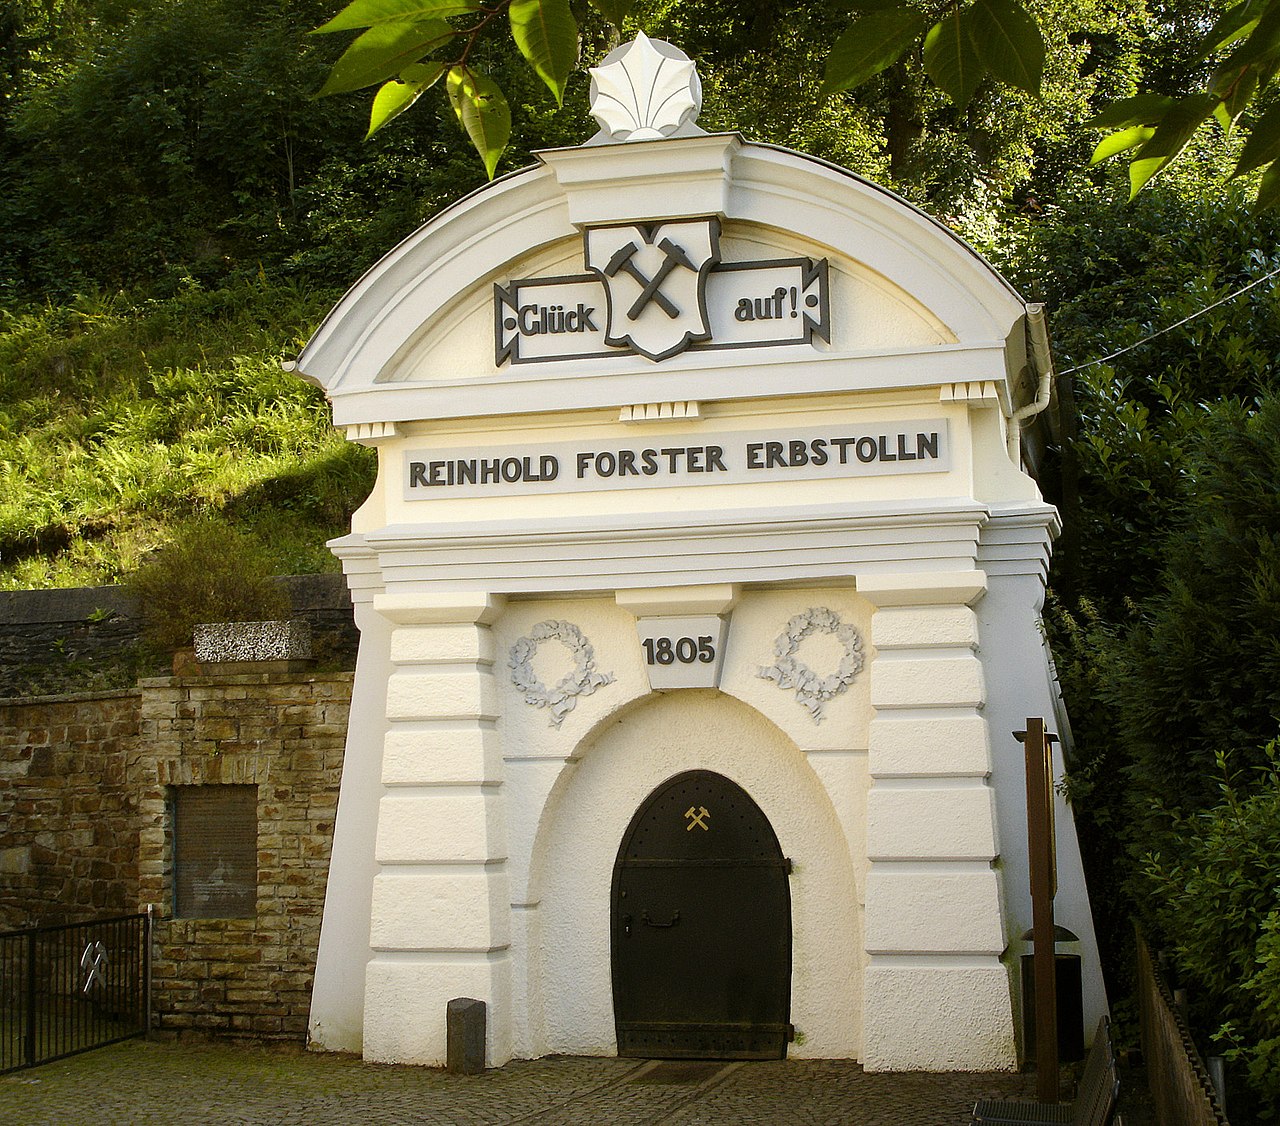 Eingangsportal des Reinhold Forster Erbstollen, Siegen-Eiserfeld, heute genutzt als Schaubergwerk.(Bild Wiki. Reinhold Forster Erbstollen)